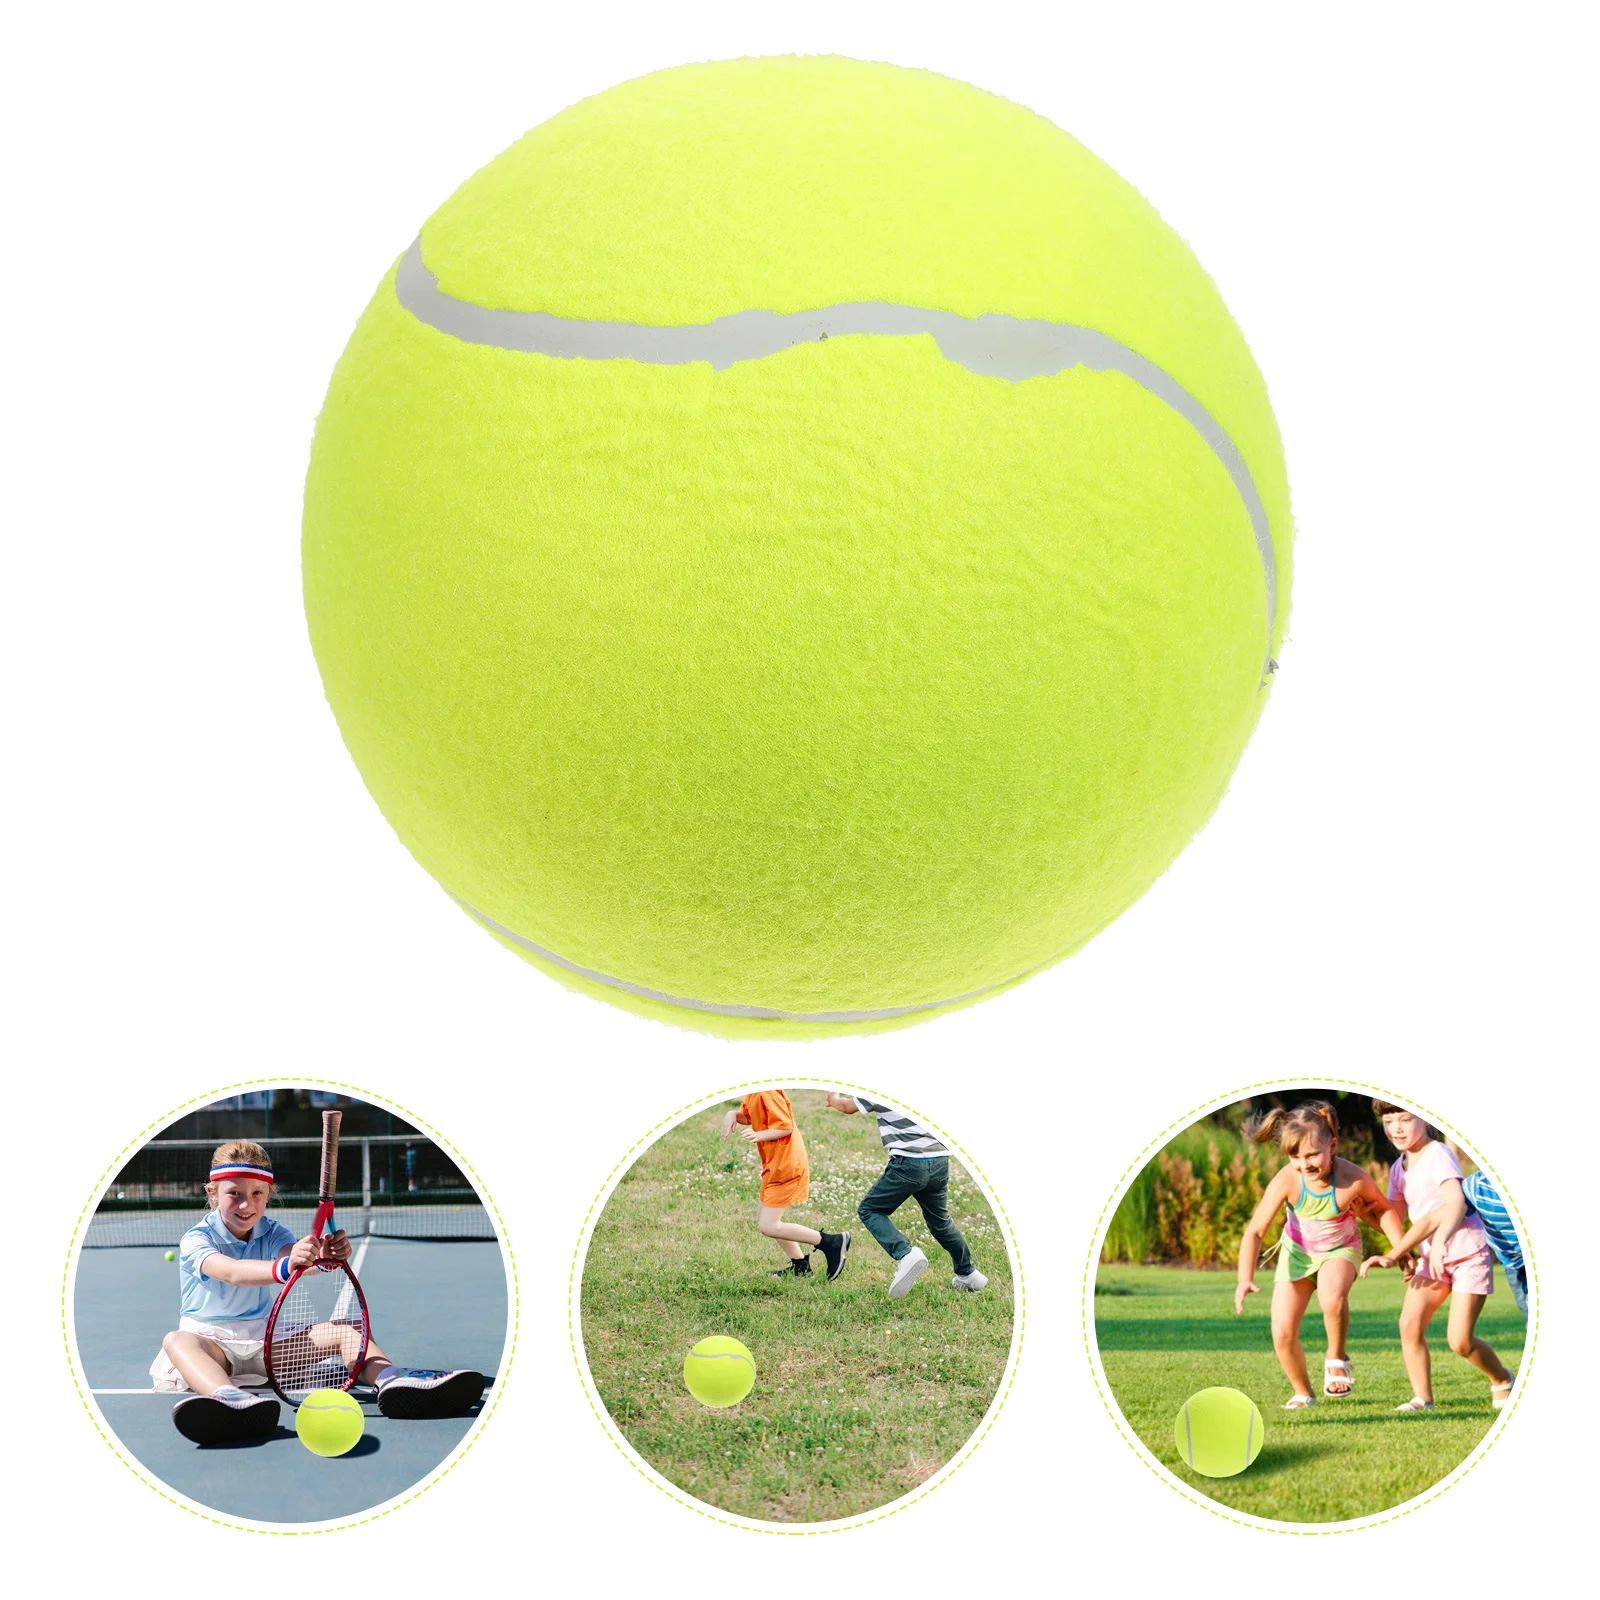 

Теннисные мячи, детская игрушка, большой детский игровой набор, большой надувной резиновый мяч